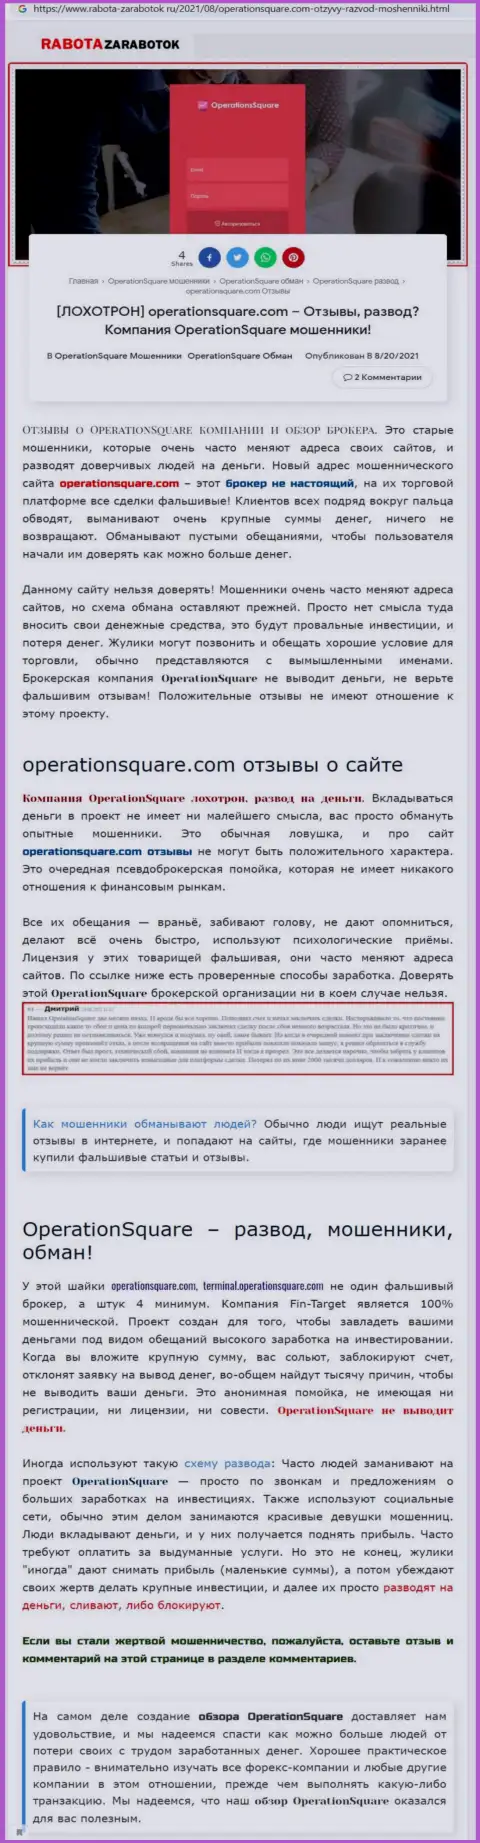 OperationSquare - АФЕРИСТЫ ! Методы обмана и реальные отзывы пострадавших